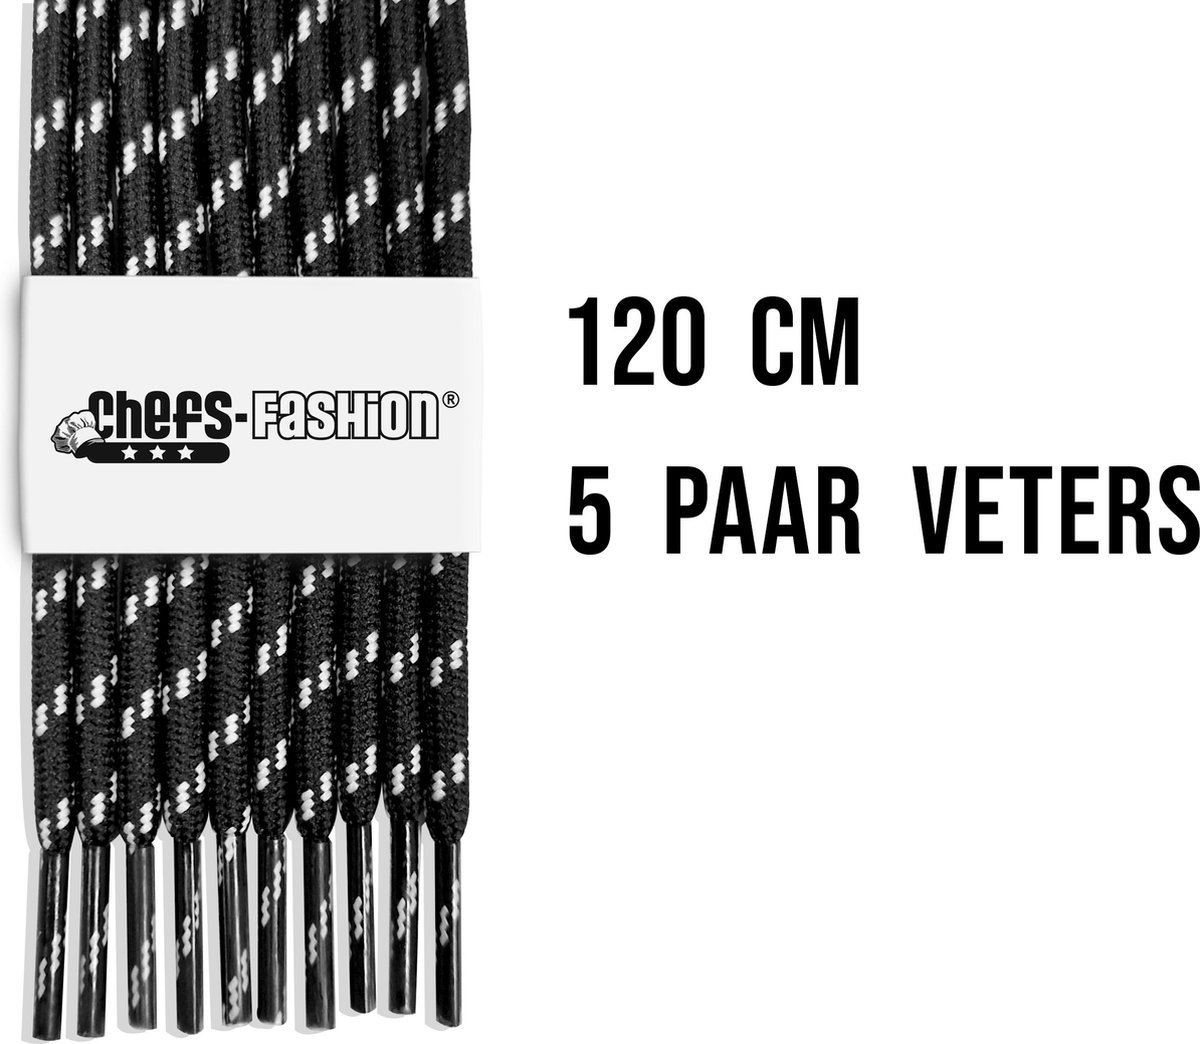 Chefs Fashion - Werk/Wandelschoen - Veters - Zwart/Wit - 120cm lang - 4mm dik - 5 paar